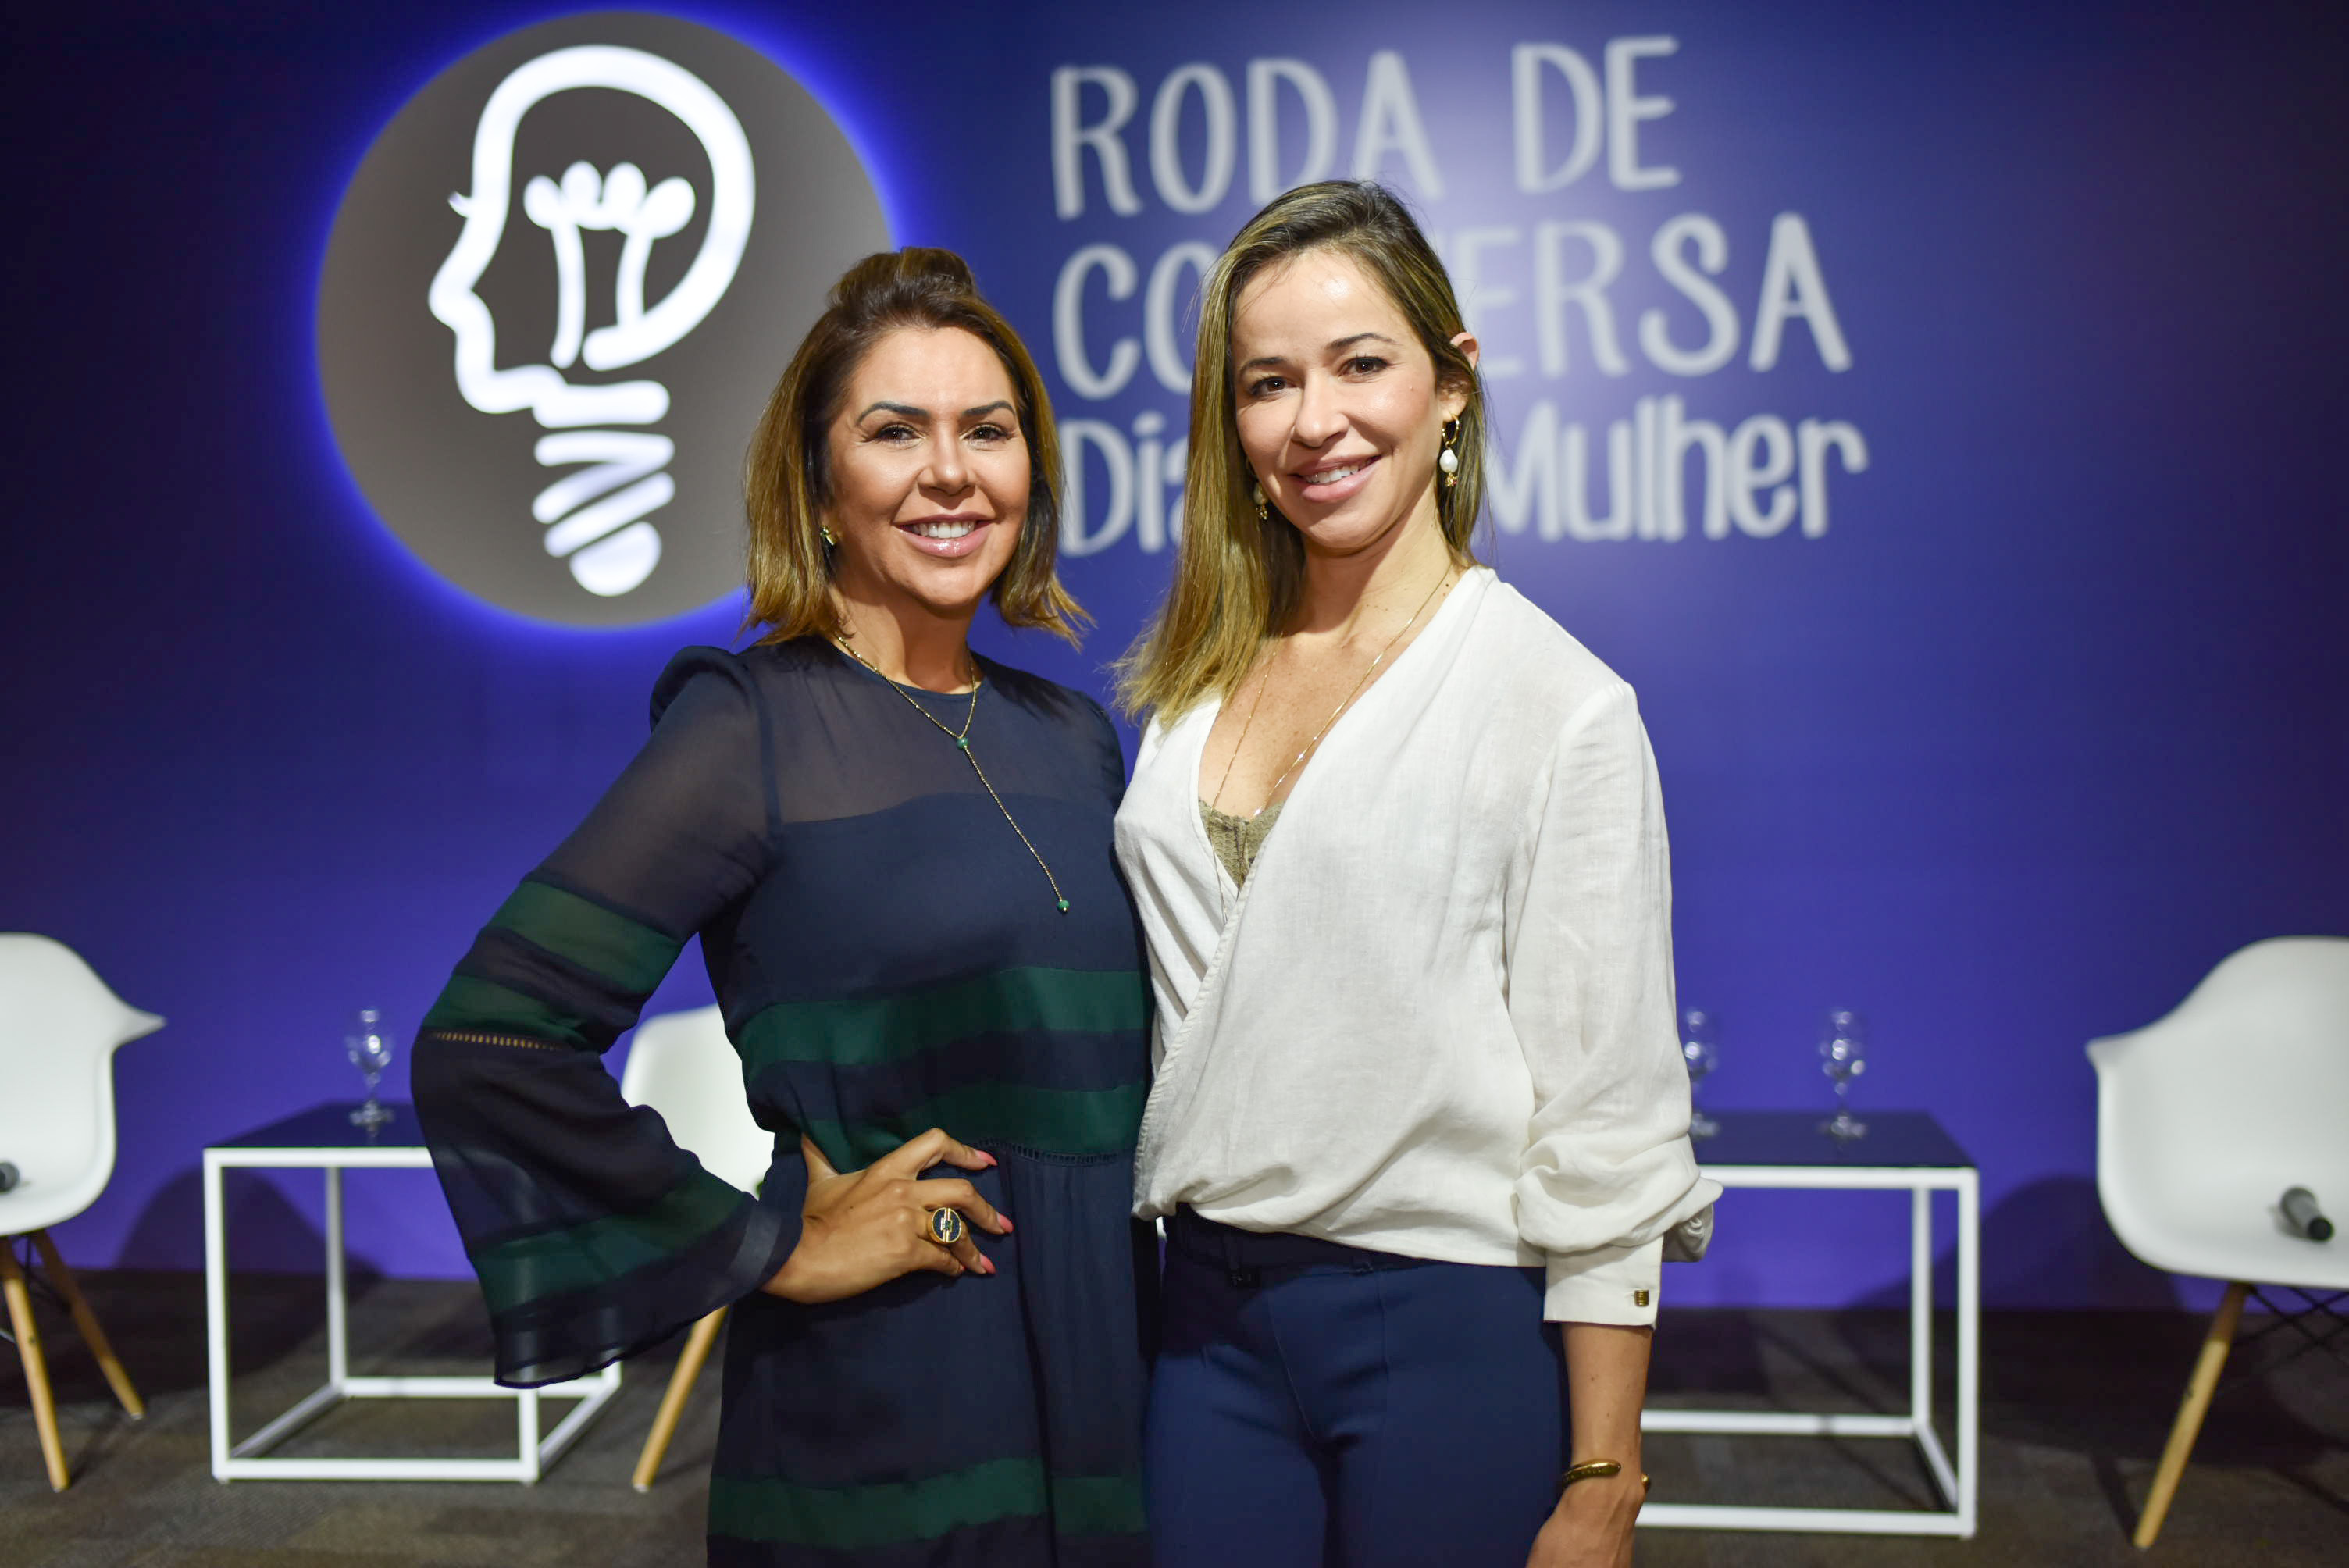 Roda de Conversa da Rede Gazeta 2020 - Dia Internacional da Mulher: Raigna Vasconcelos e Ana Paula Galeão